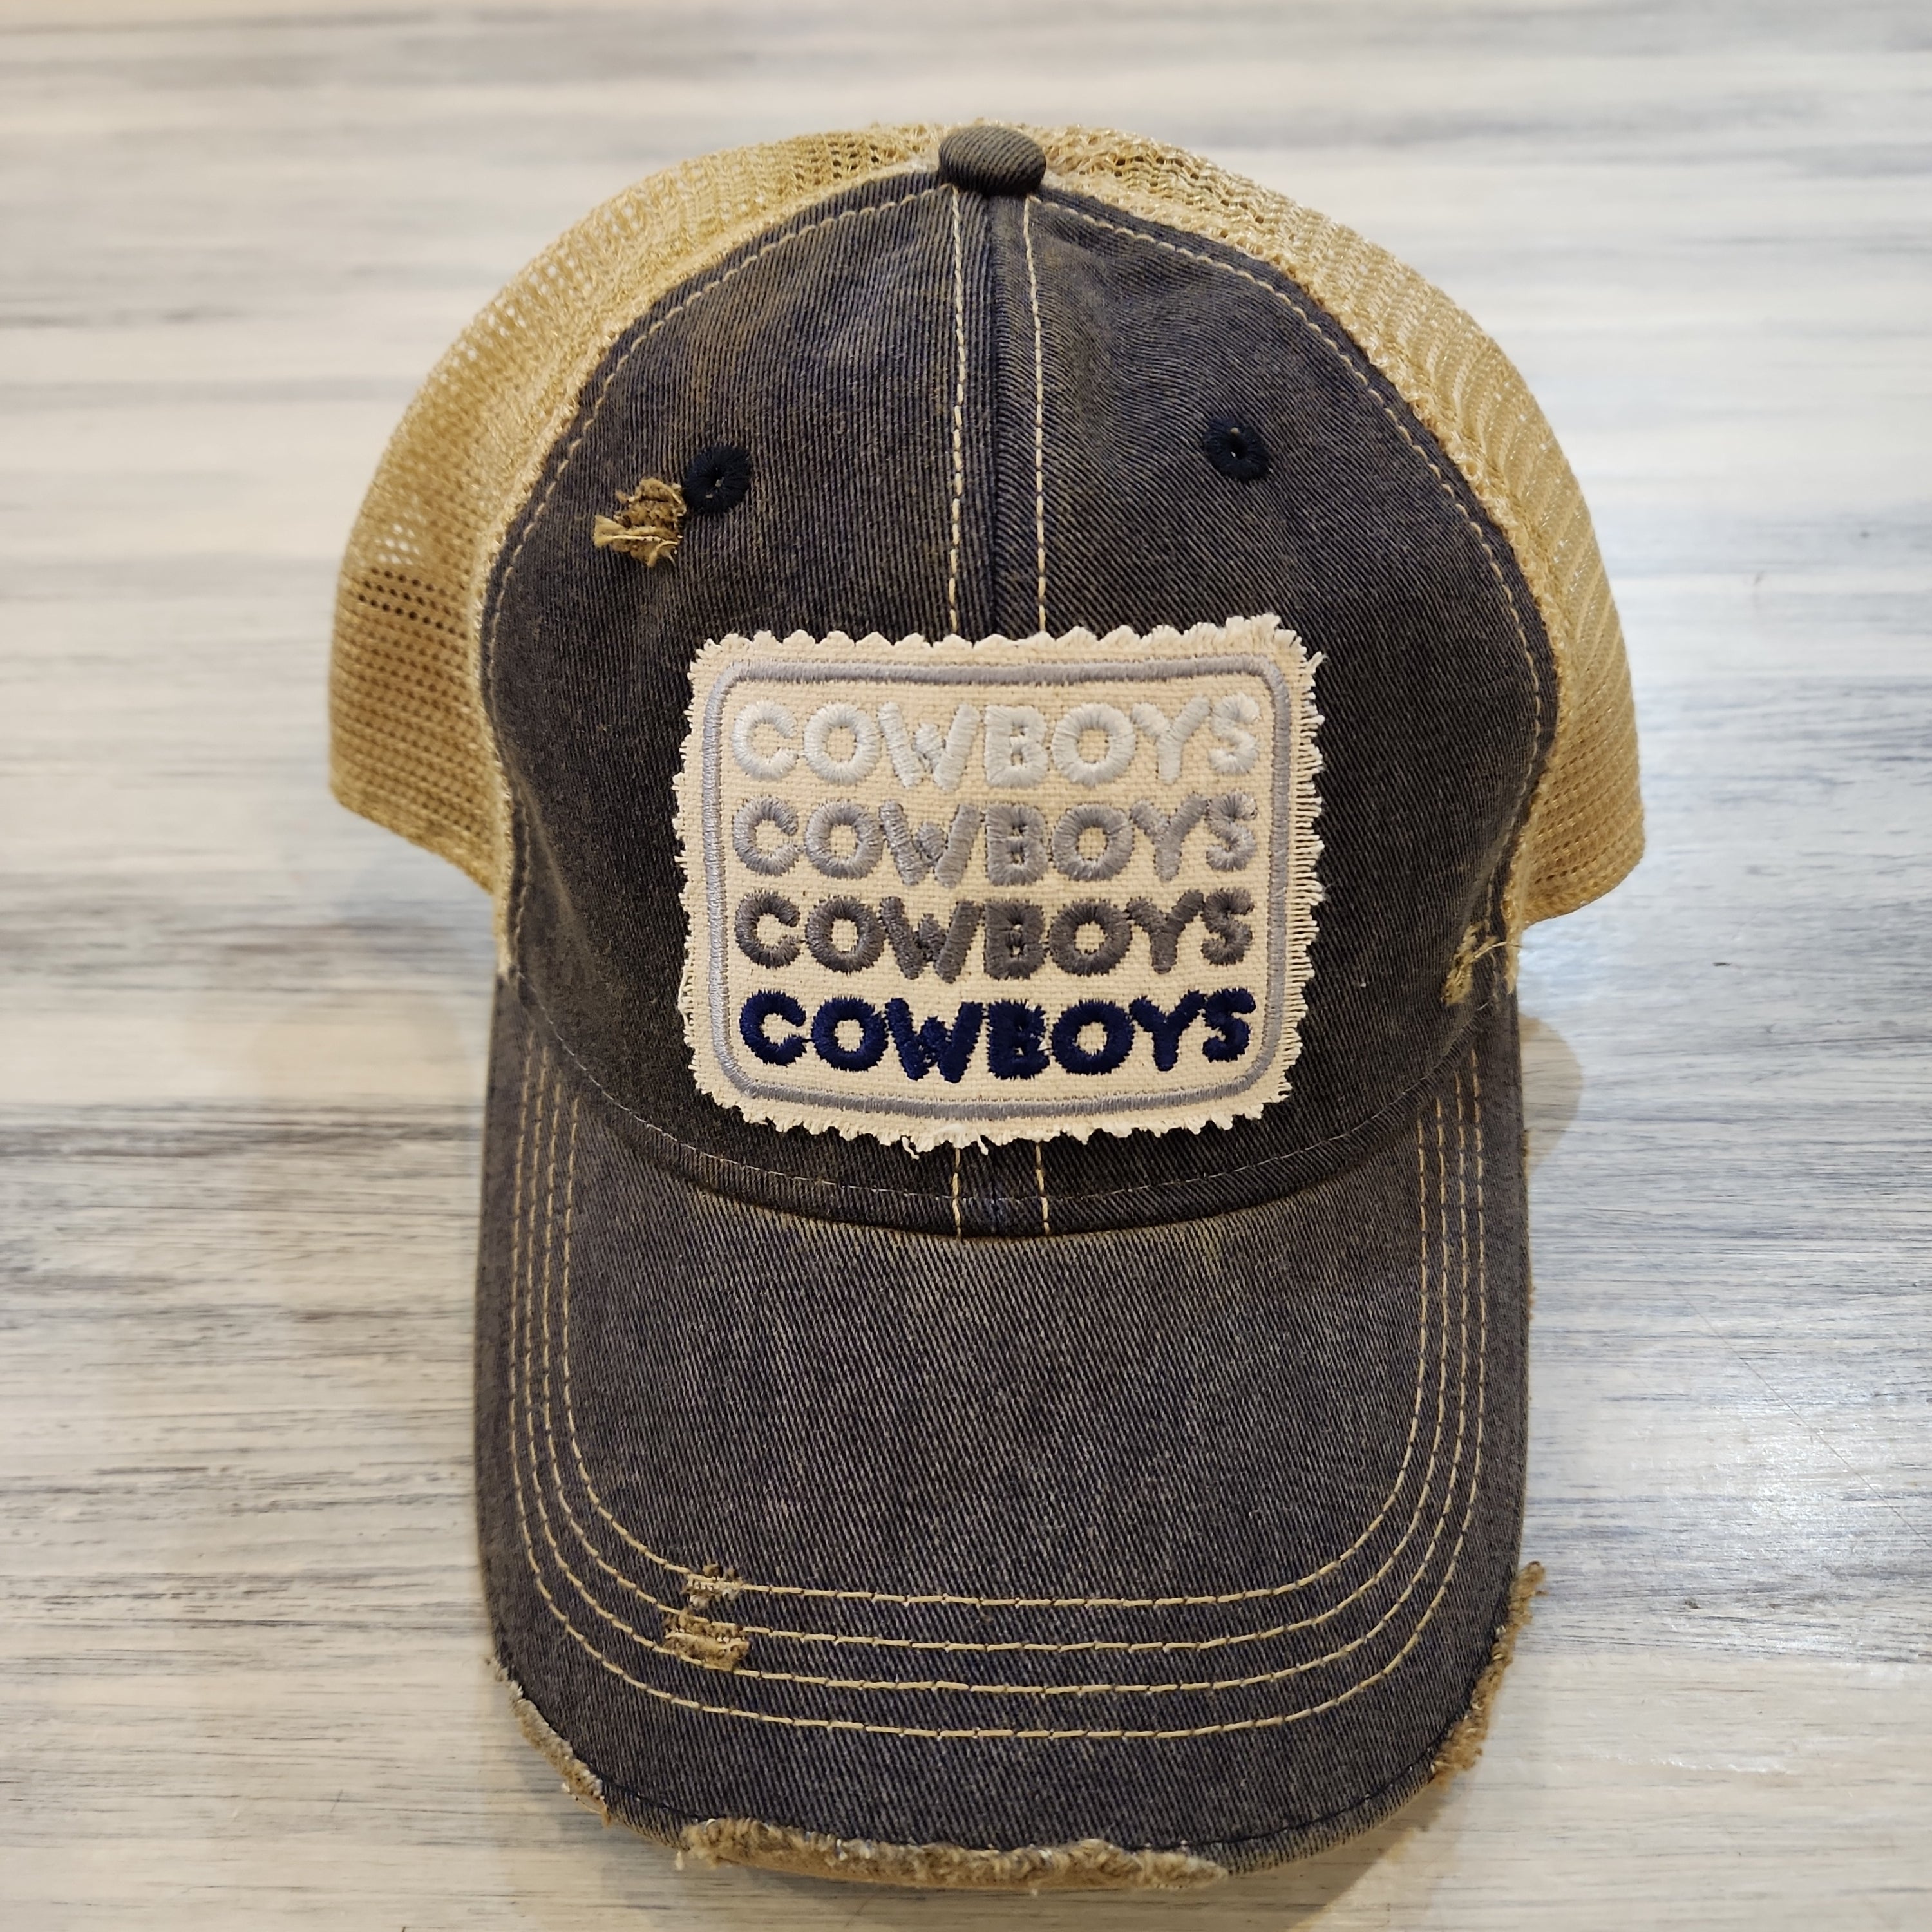 Cowboys Baseball Caps